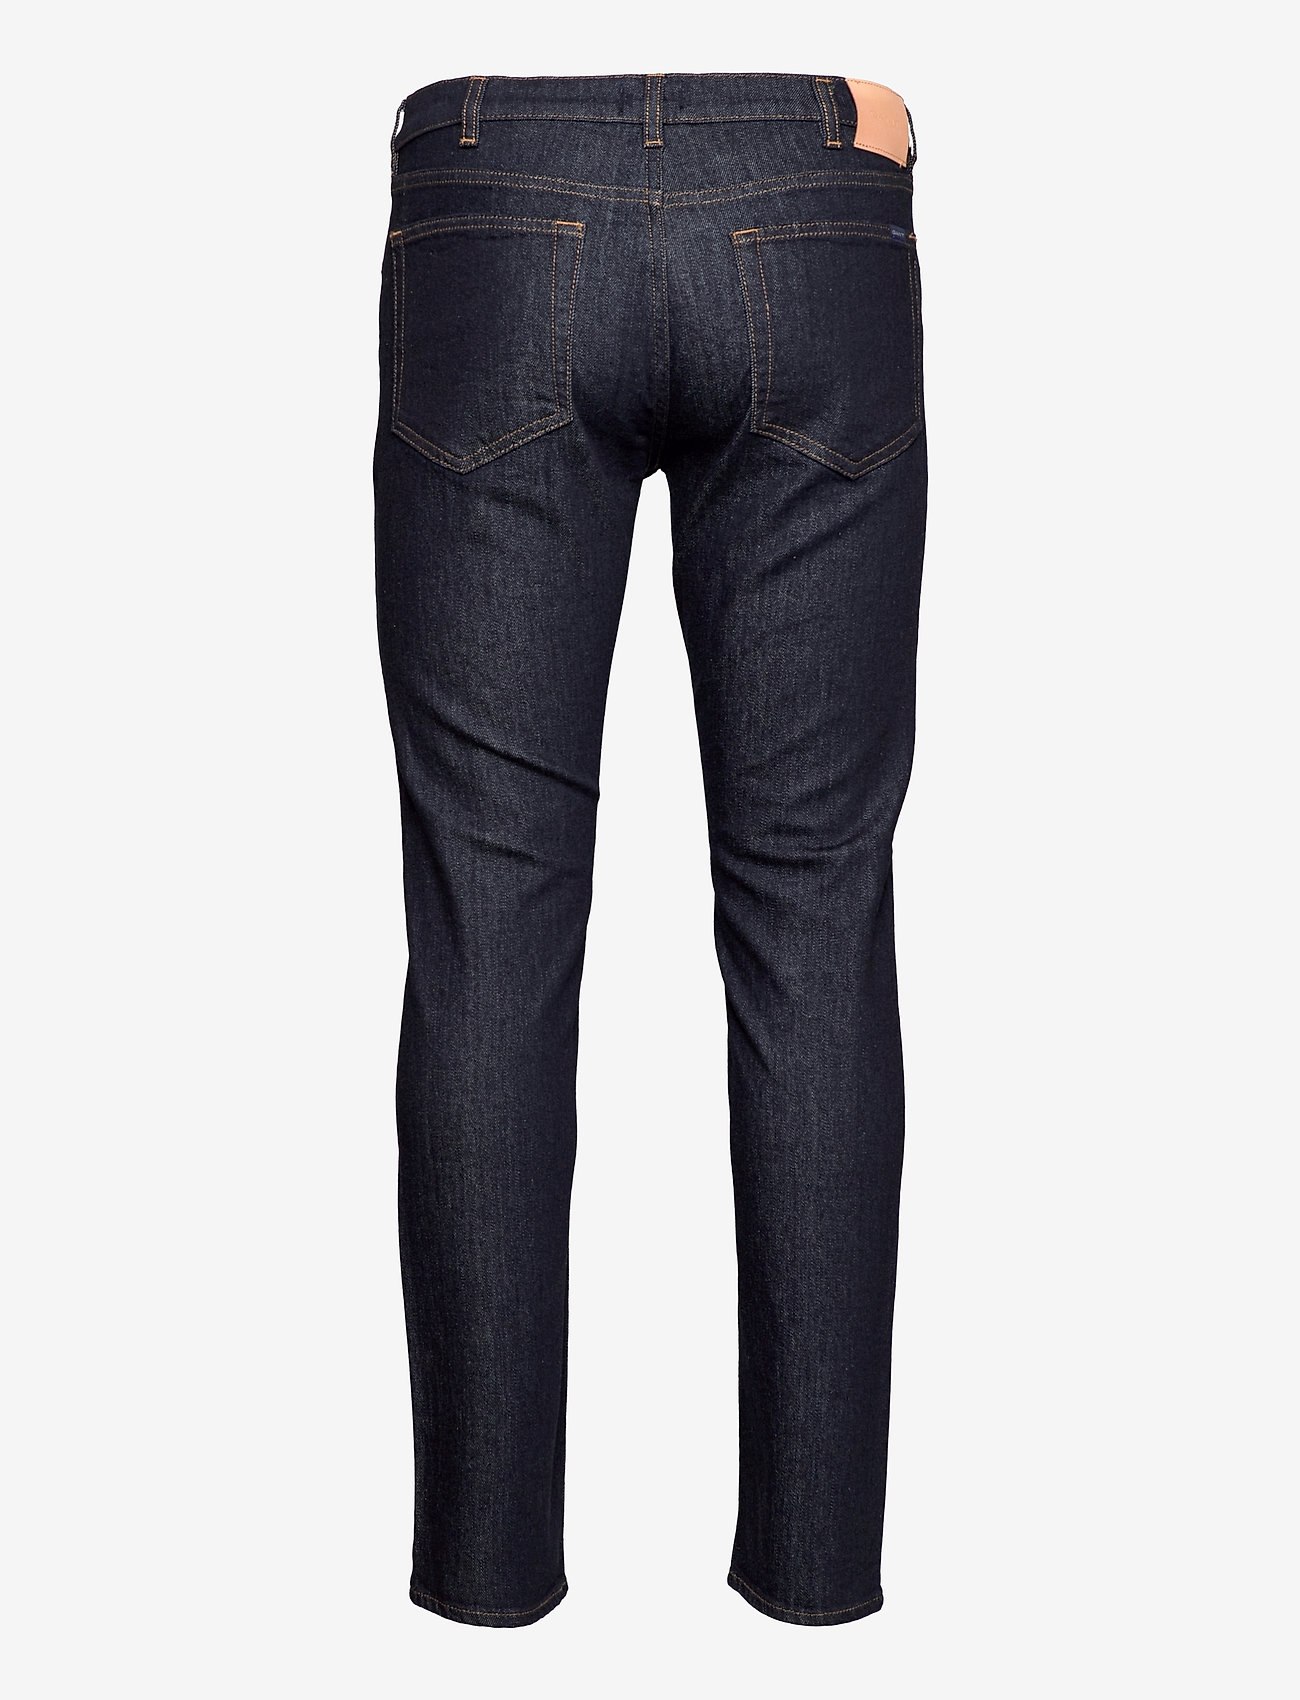 GANT - ARLEY GANT JEANS - regular jeans - dark blue - 1